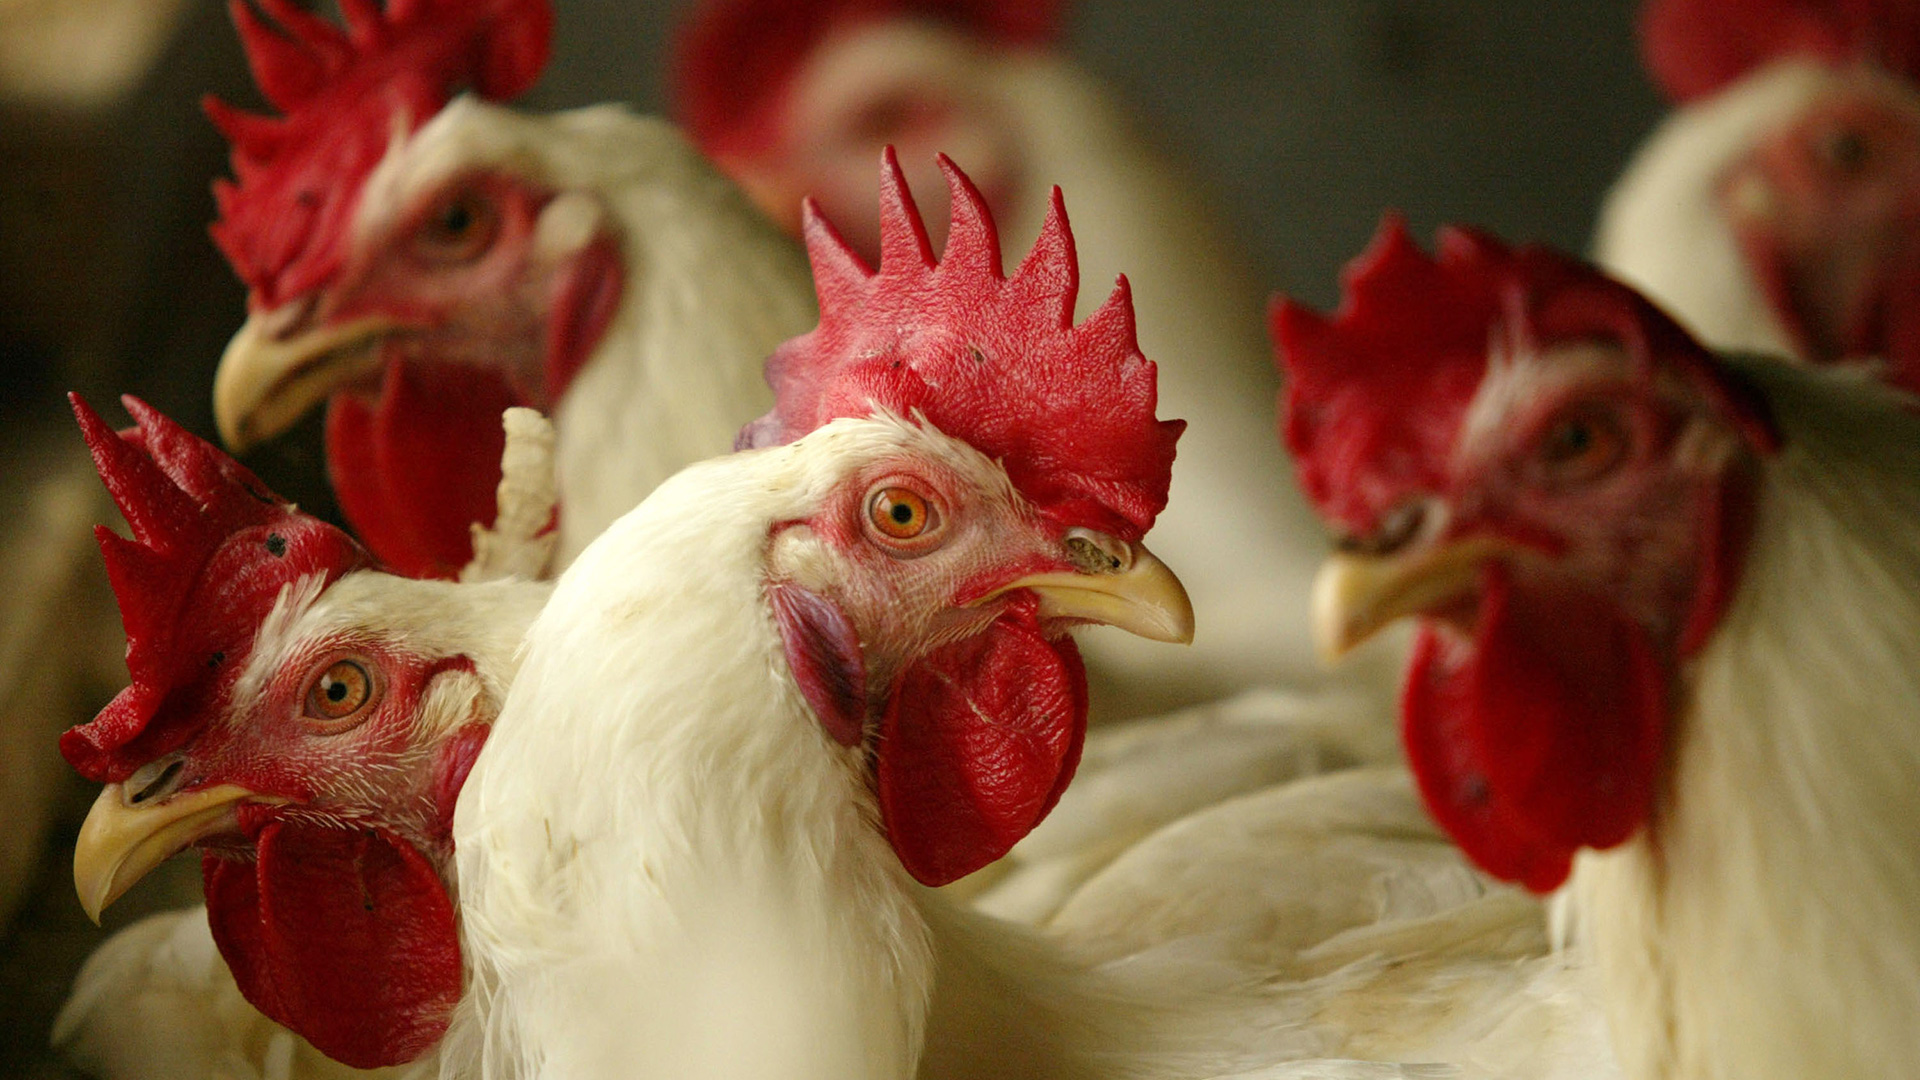 Gripe aviar: Argentina reanudará el envío de productos avícolas hacia Japón  - Infobae